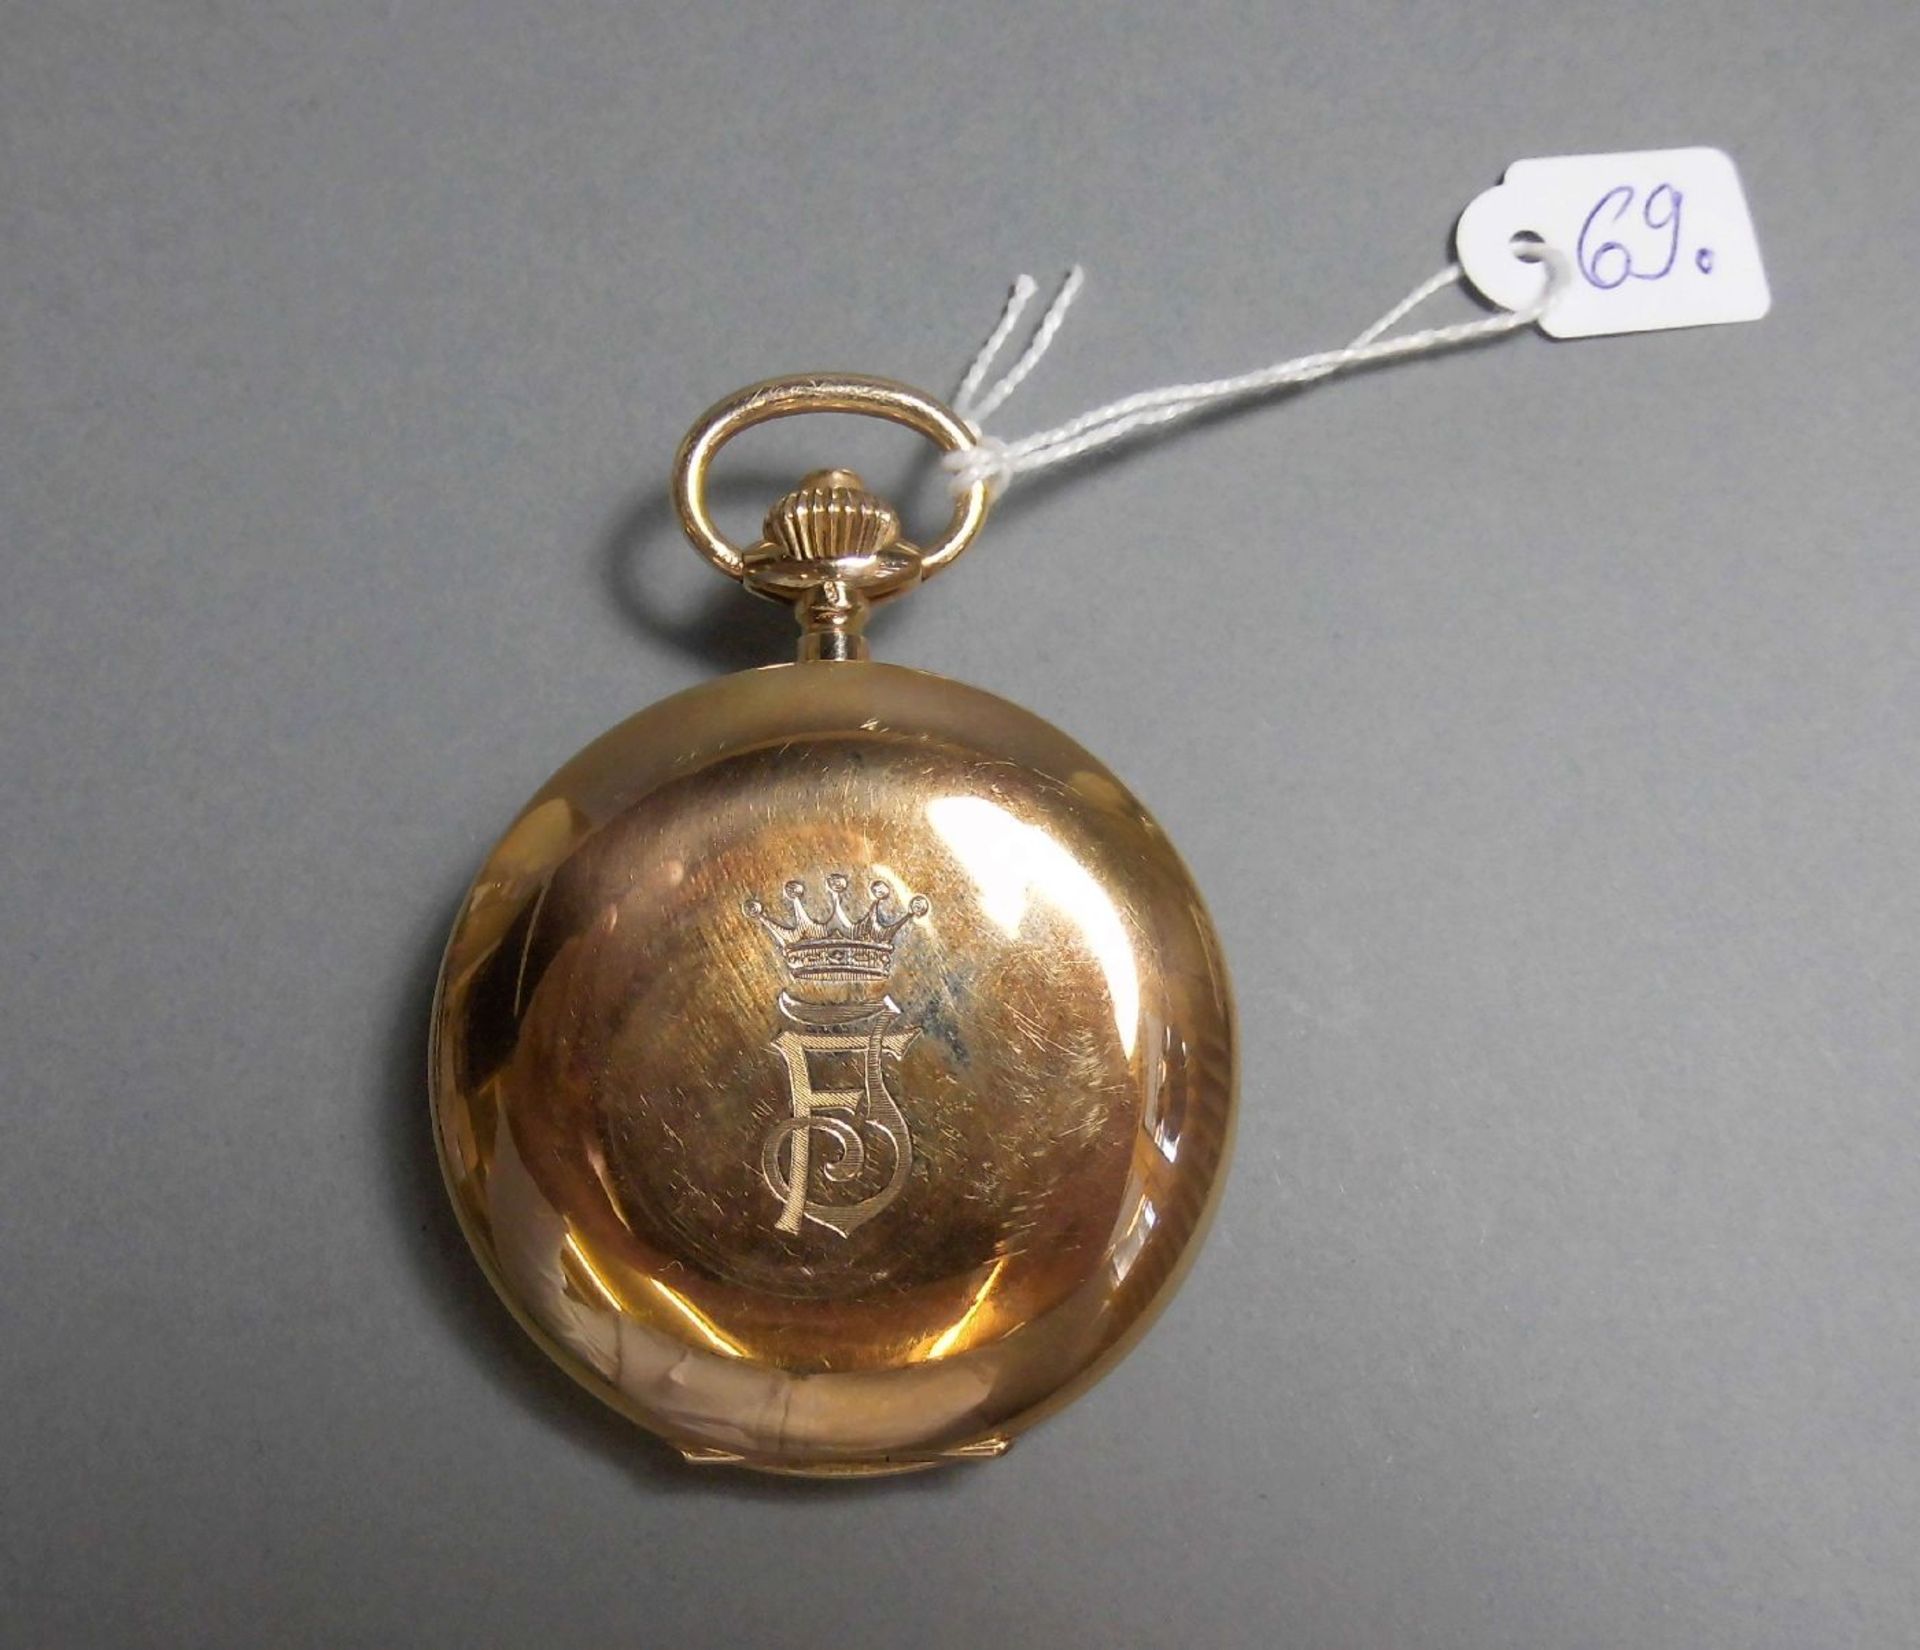 TASCHENUHR / pocketwatch, 14 kt. Gold, Staubdeckel Metall. Weißes Zifferblatt, kleine Sekunde bei - Image 2 of 7